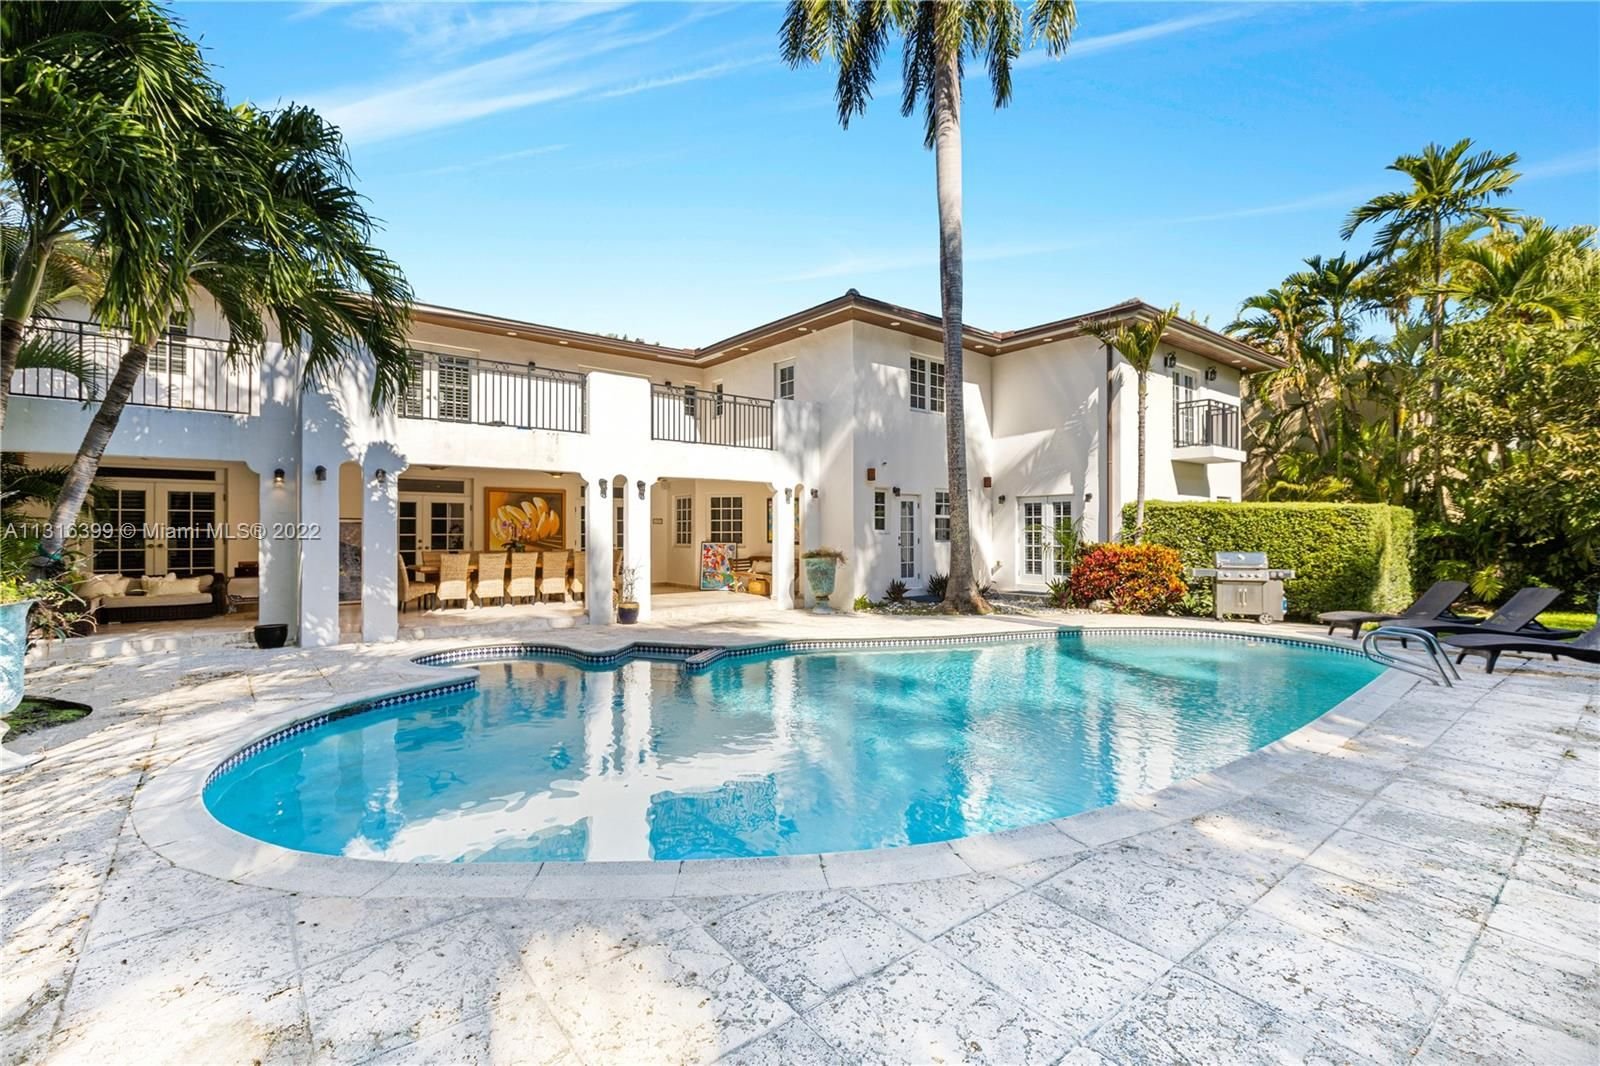 Real estate property located at 2055 Miami Ave, Miami-Dade County, Miami, FL